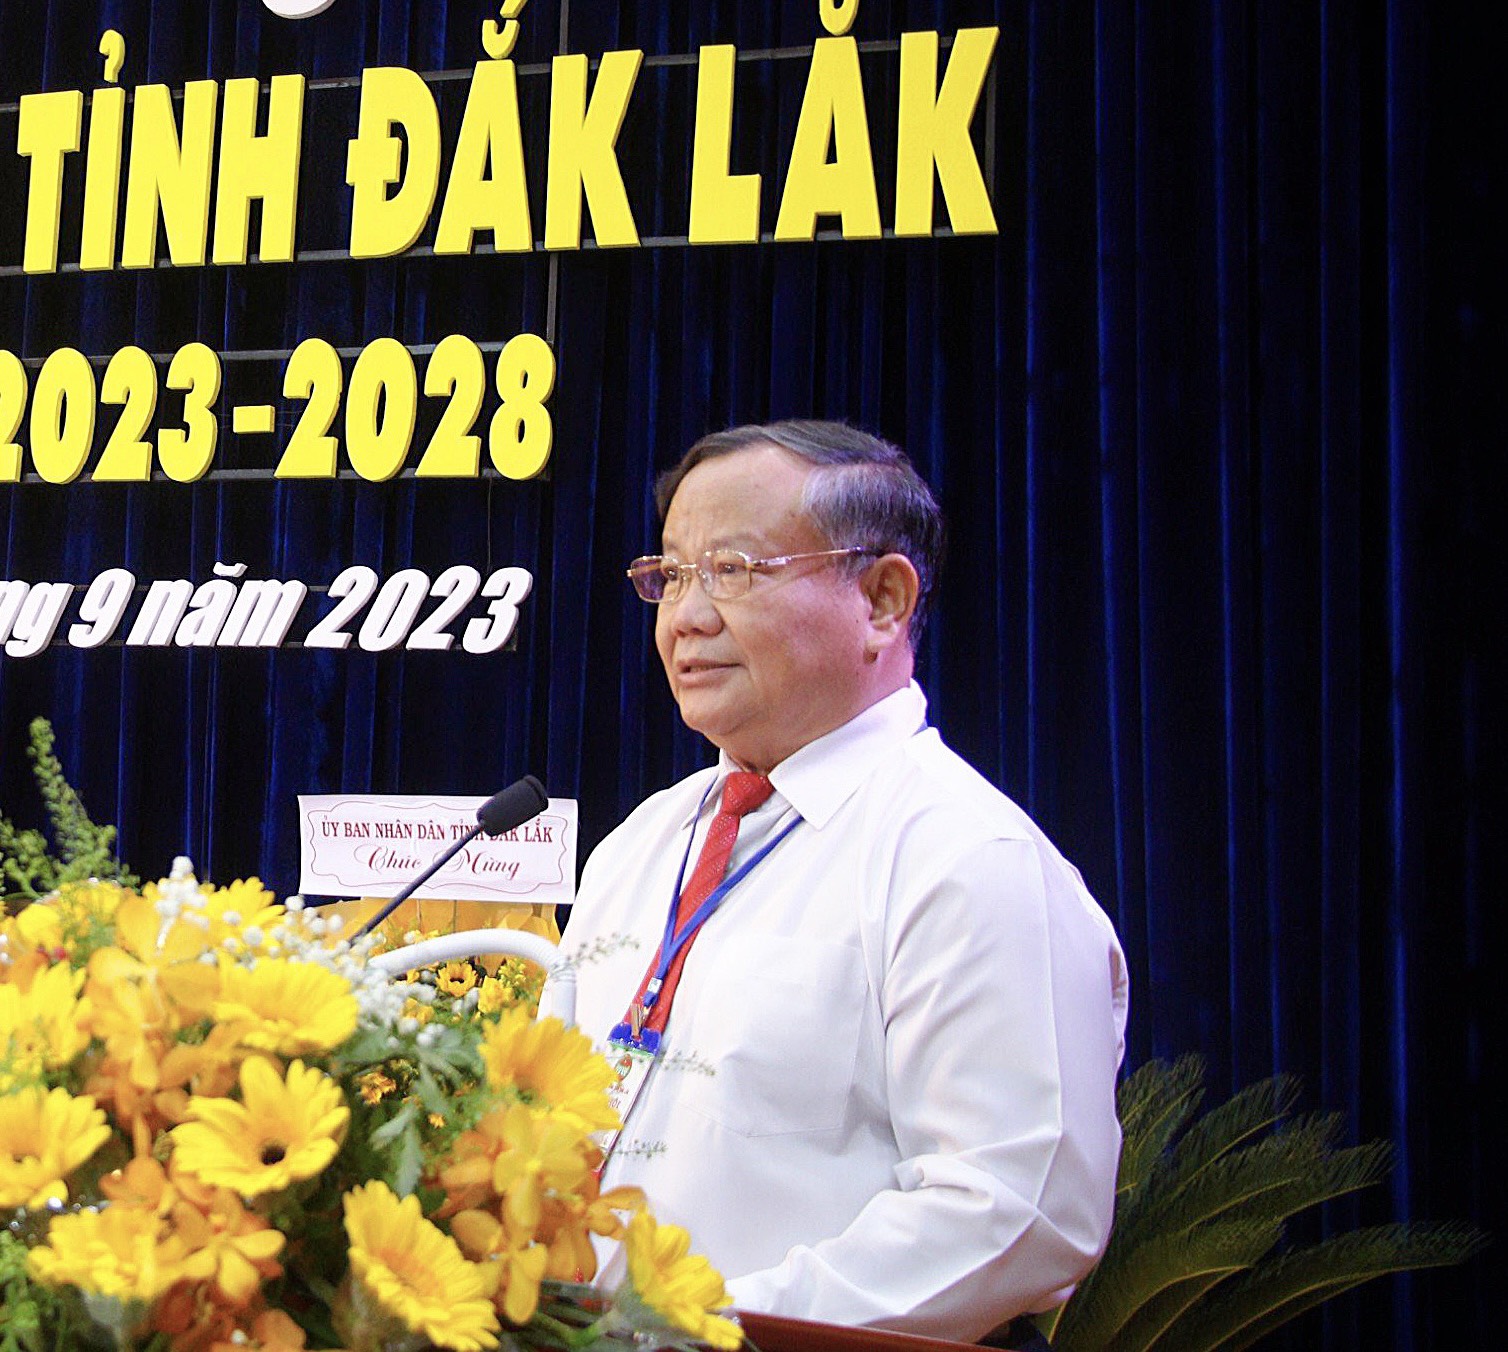 Phó Chủ tịch Hội NDVN: Cần có bước đi phù hợp để Đắk Lắk là nơi đáng sống - Ảnh 4.